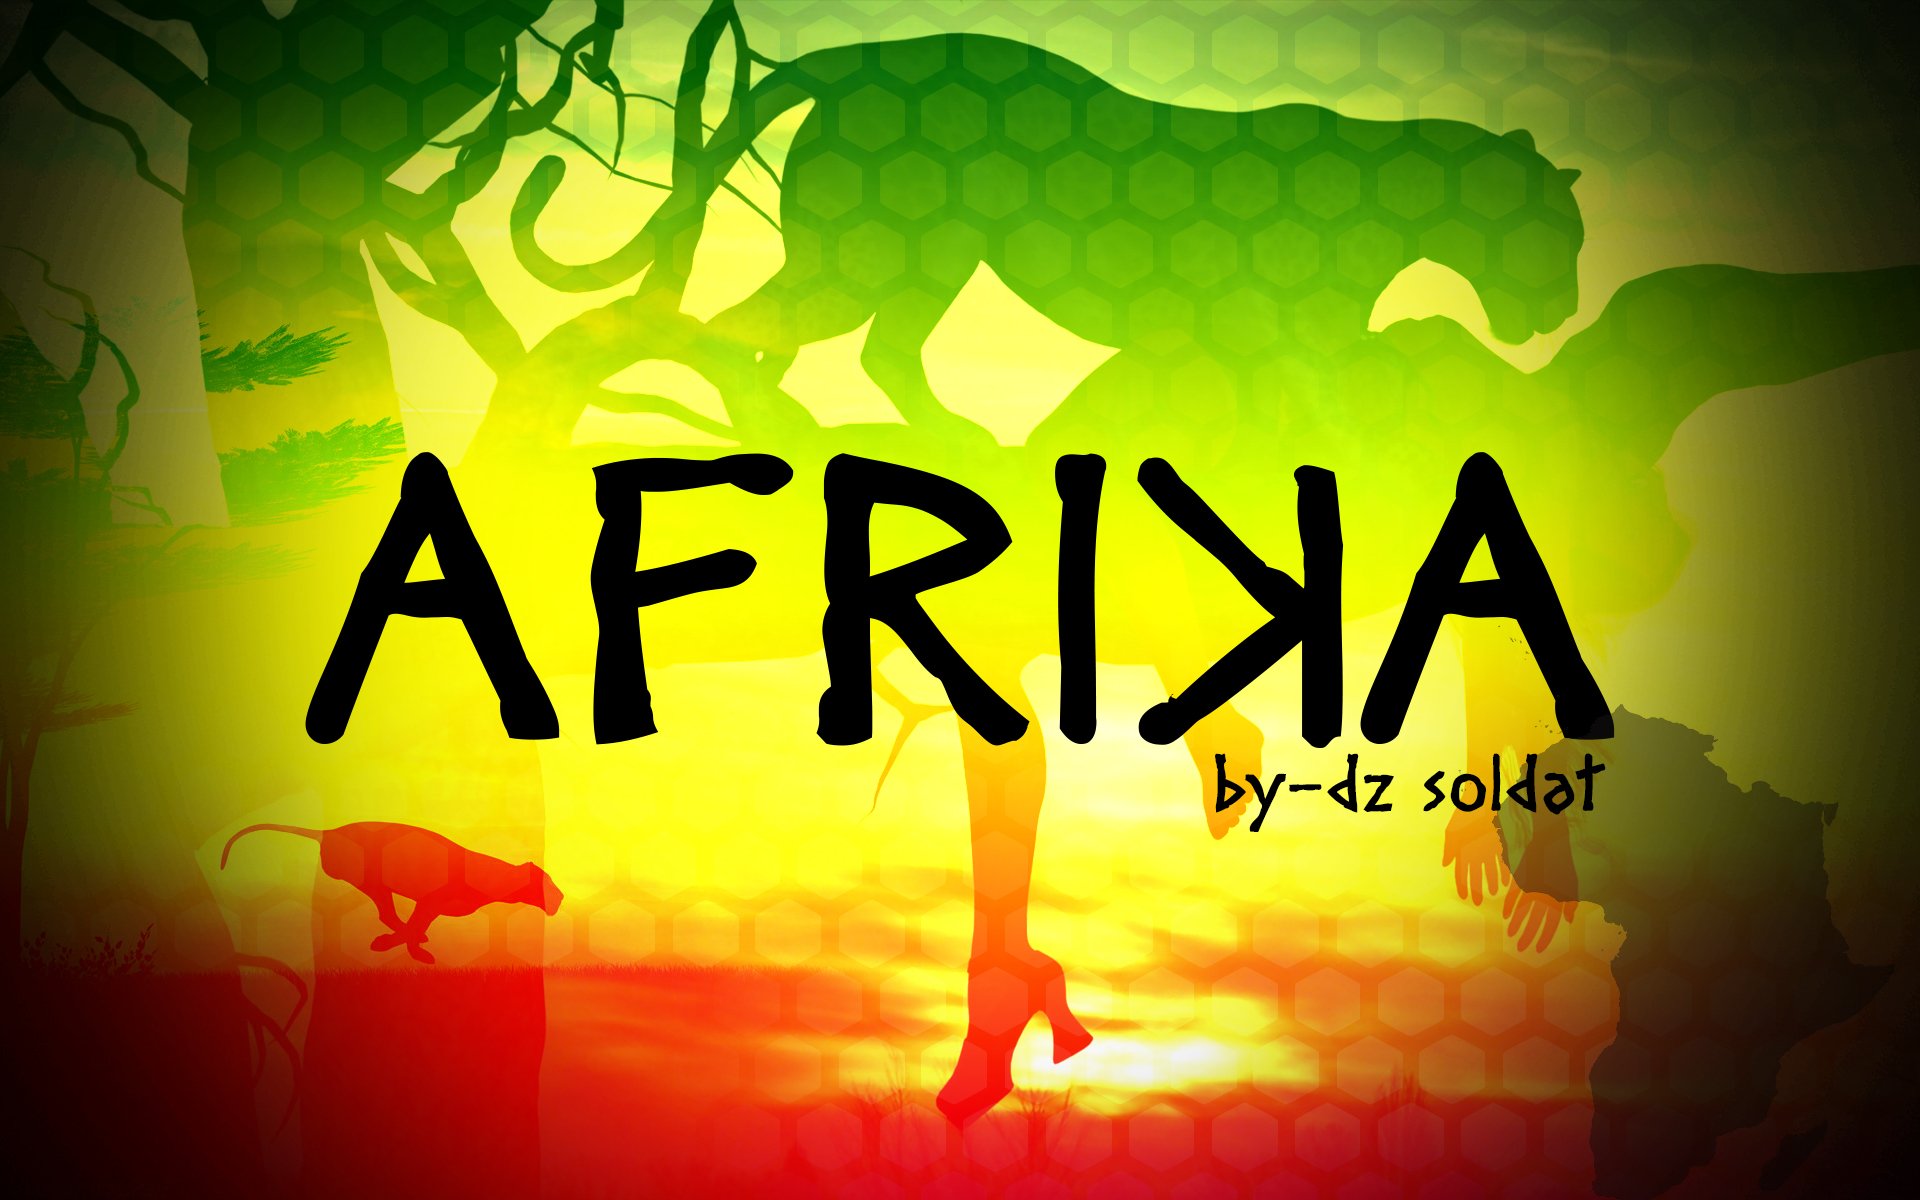 afrika, Lion, Africa, Abstract, Panter, Leopard, Girl Wallpaper